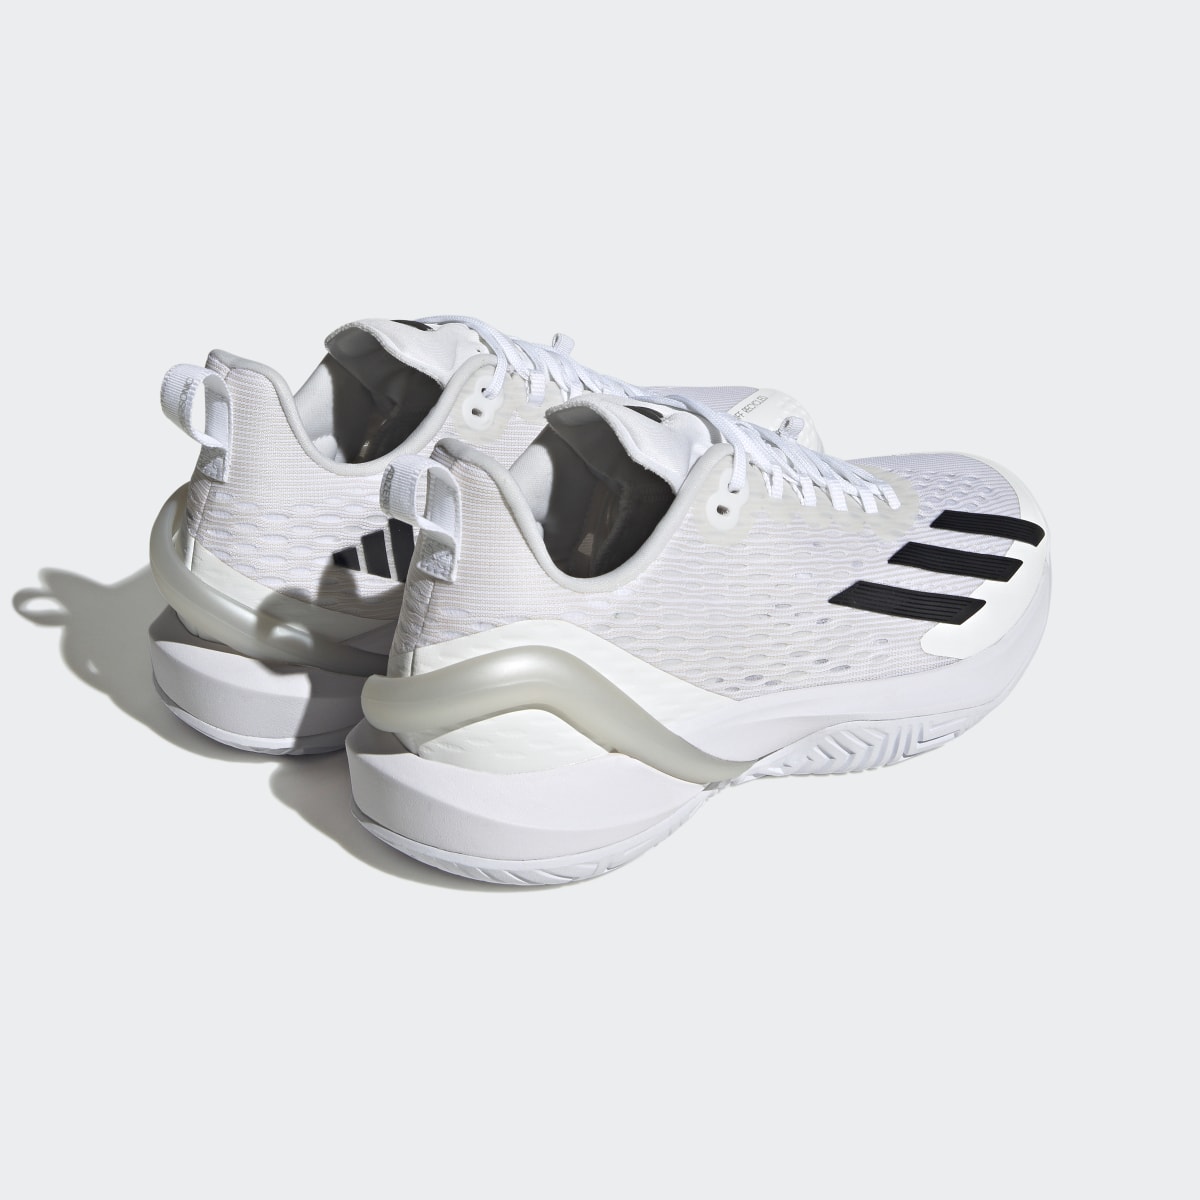 Adidas Adizero Cybersonic Tennis Shoes. 9